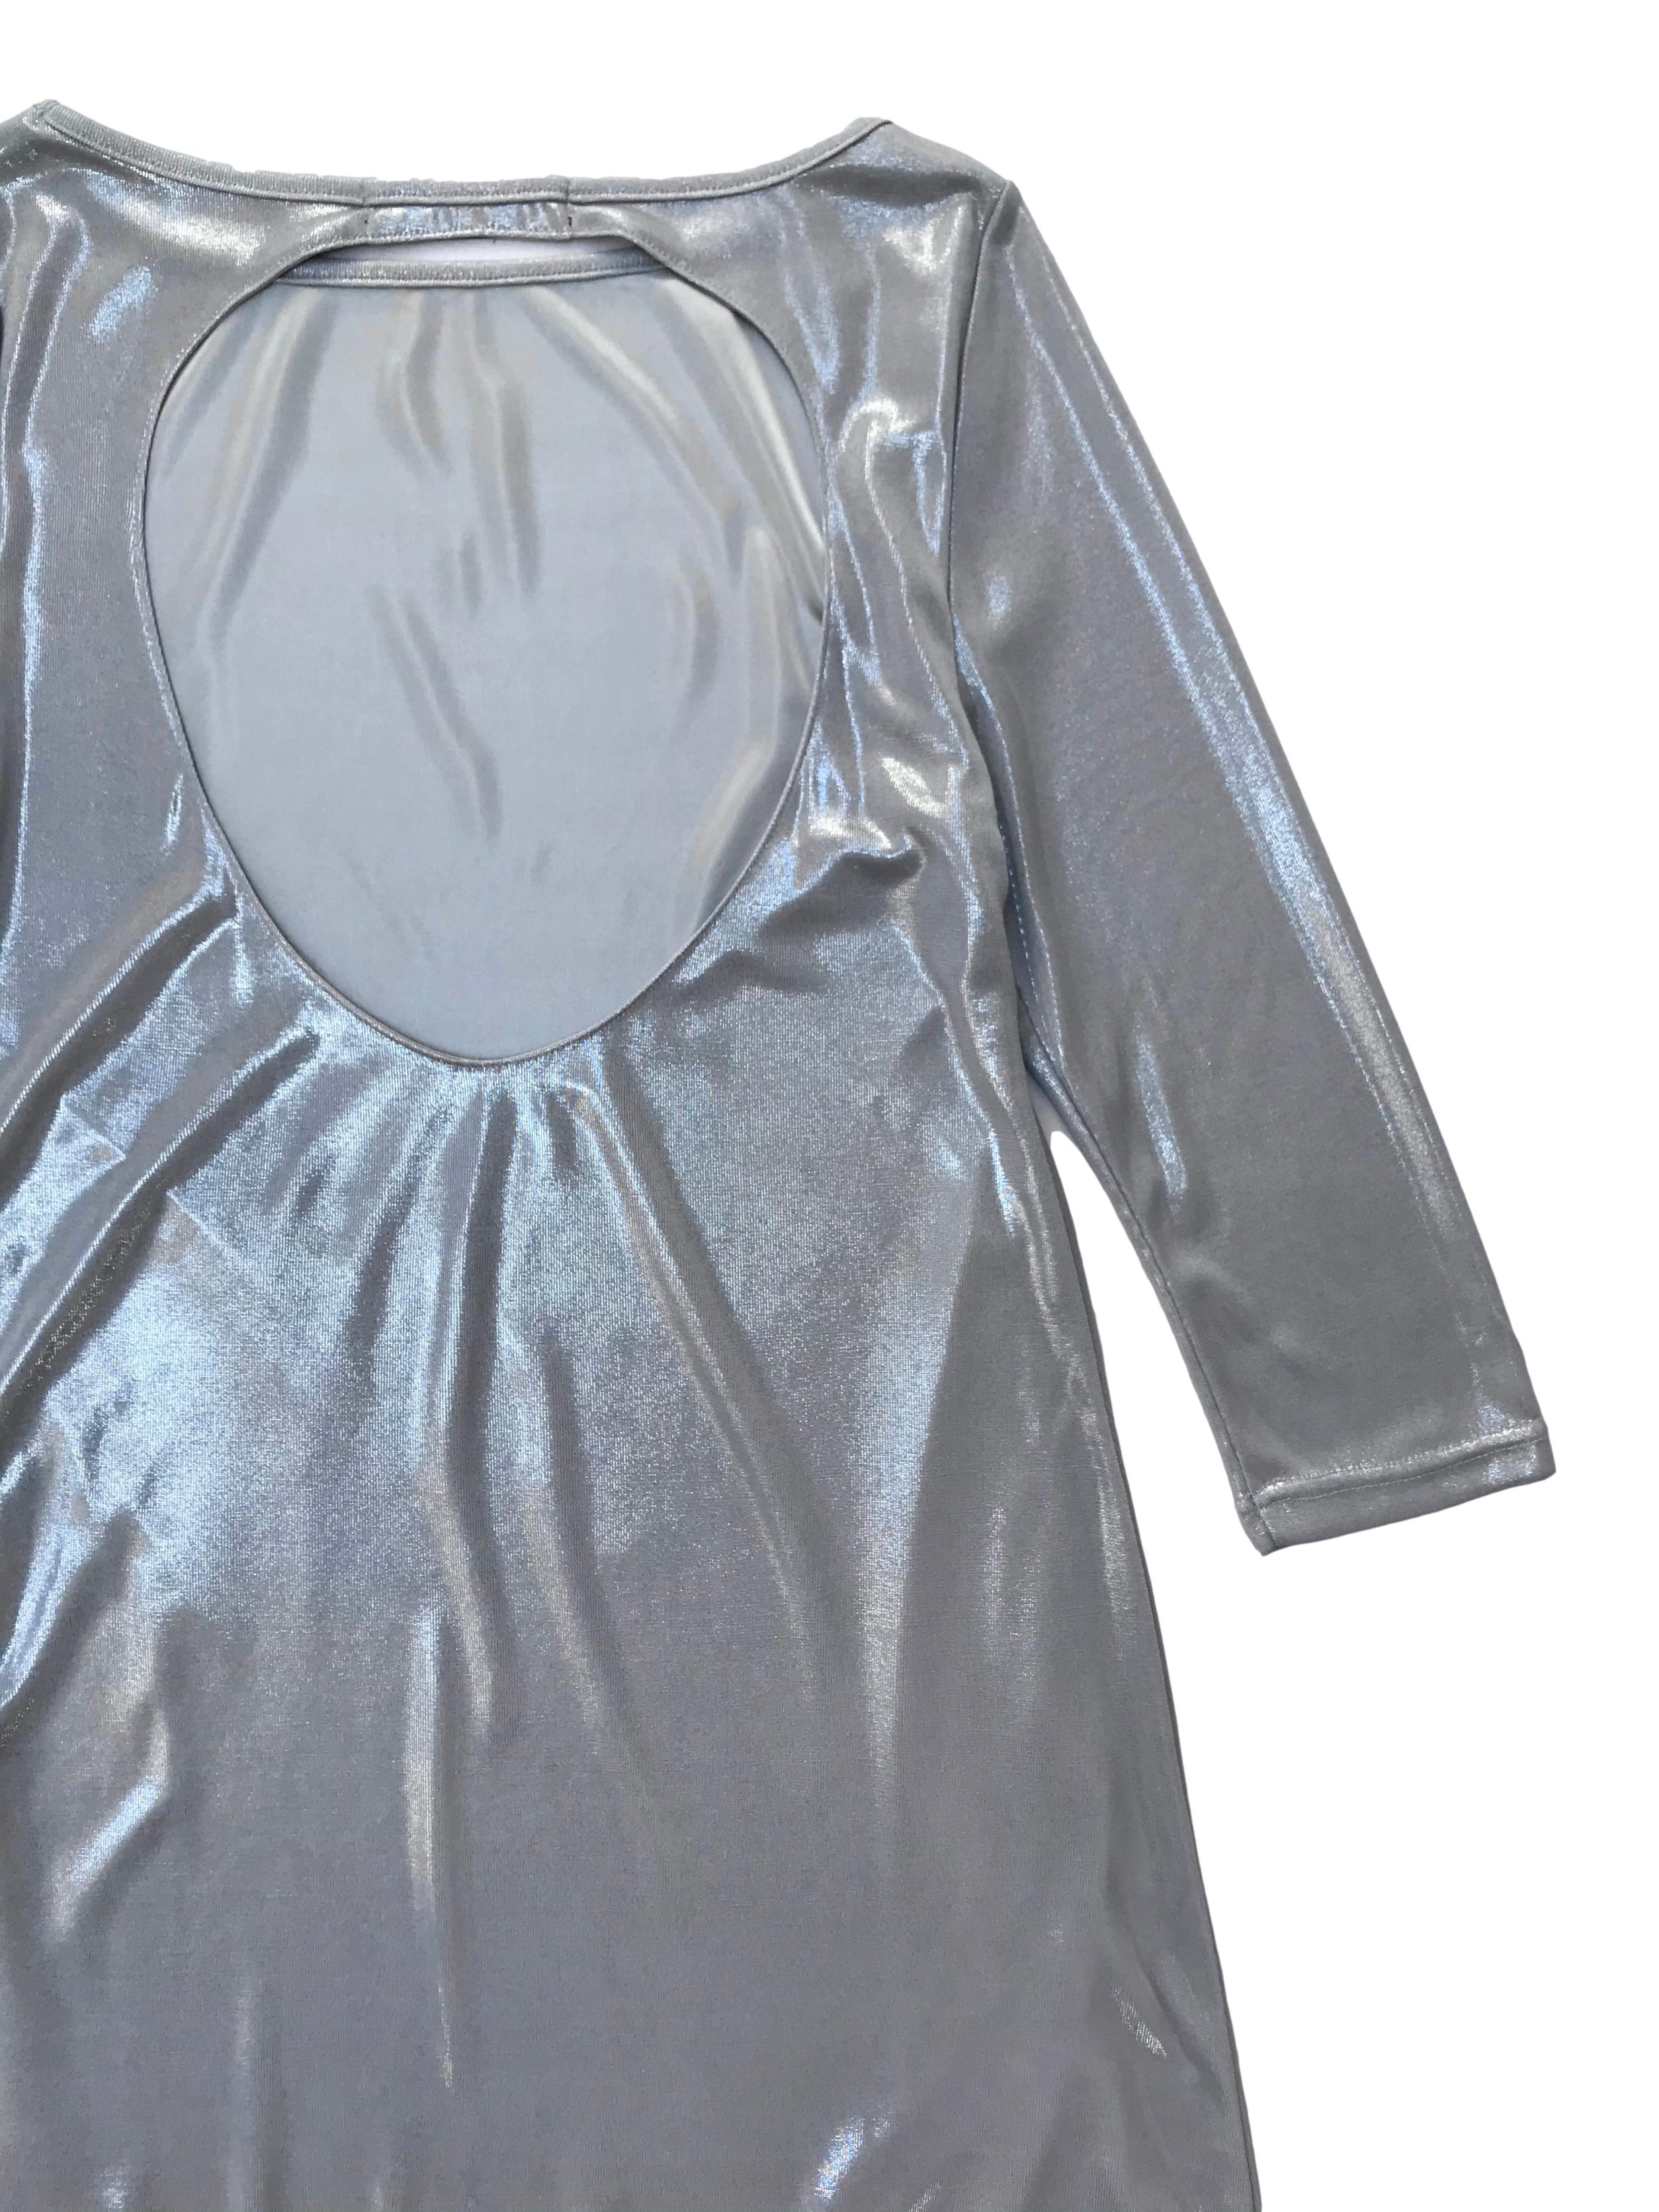 Vestido Zara plateado con escote en la espalda y forro, manga 3/4. Busto 90cm Largo 85cm